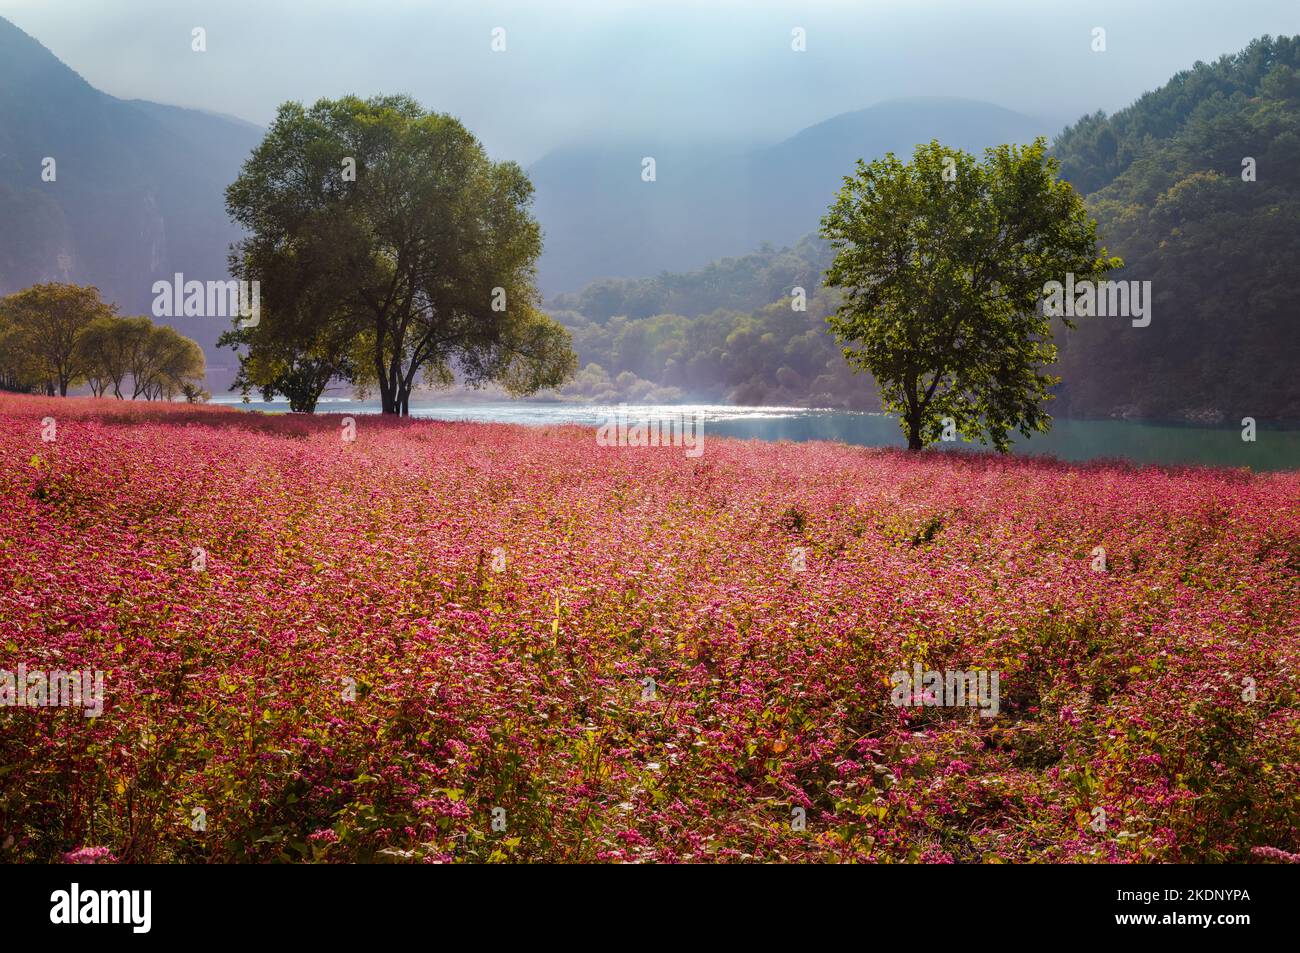 Bellissimo autunno in Corea. Scenario di campi di fiori di grano saraceno rosso la mattina del fiume Donggang nella valle di montagna nebbiosa. Foto Stock